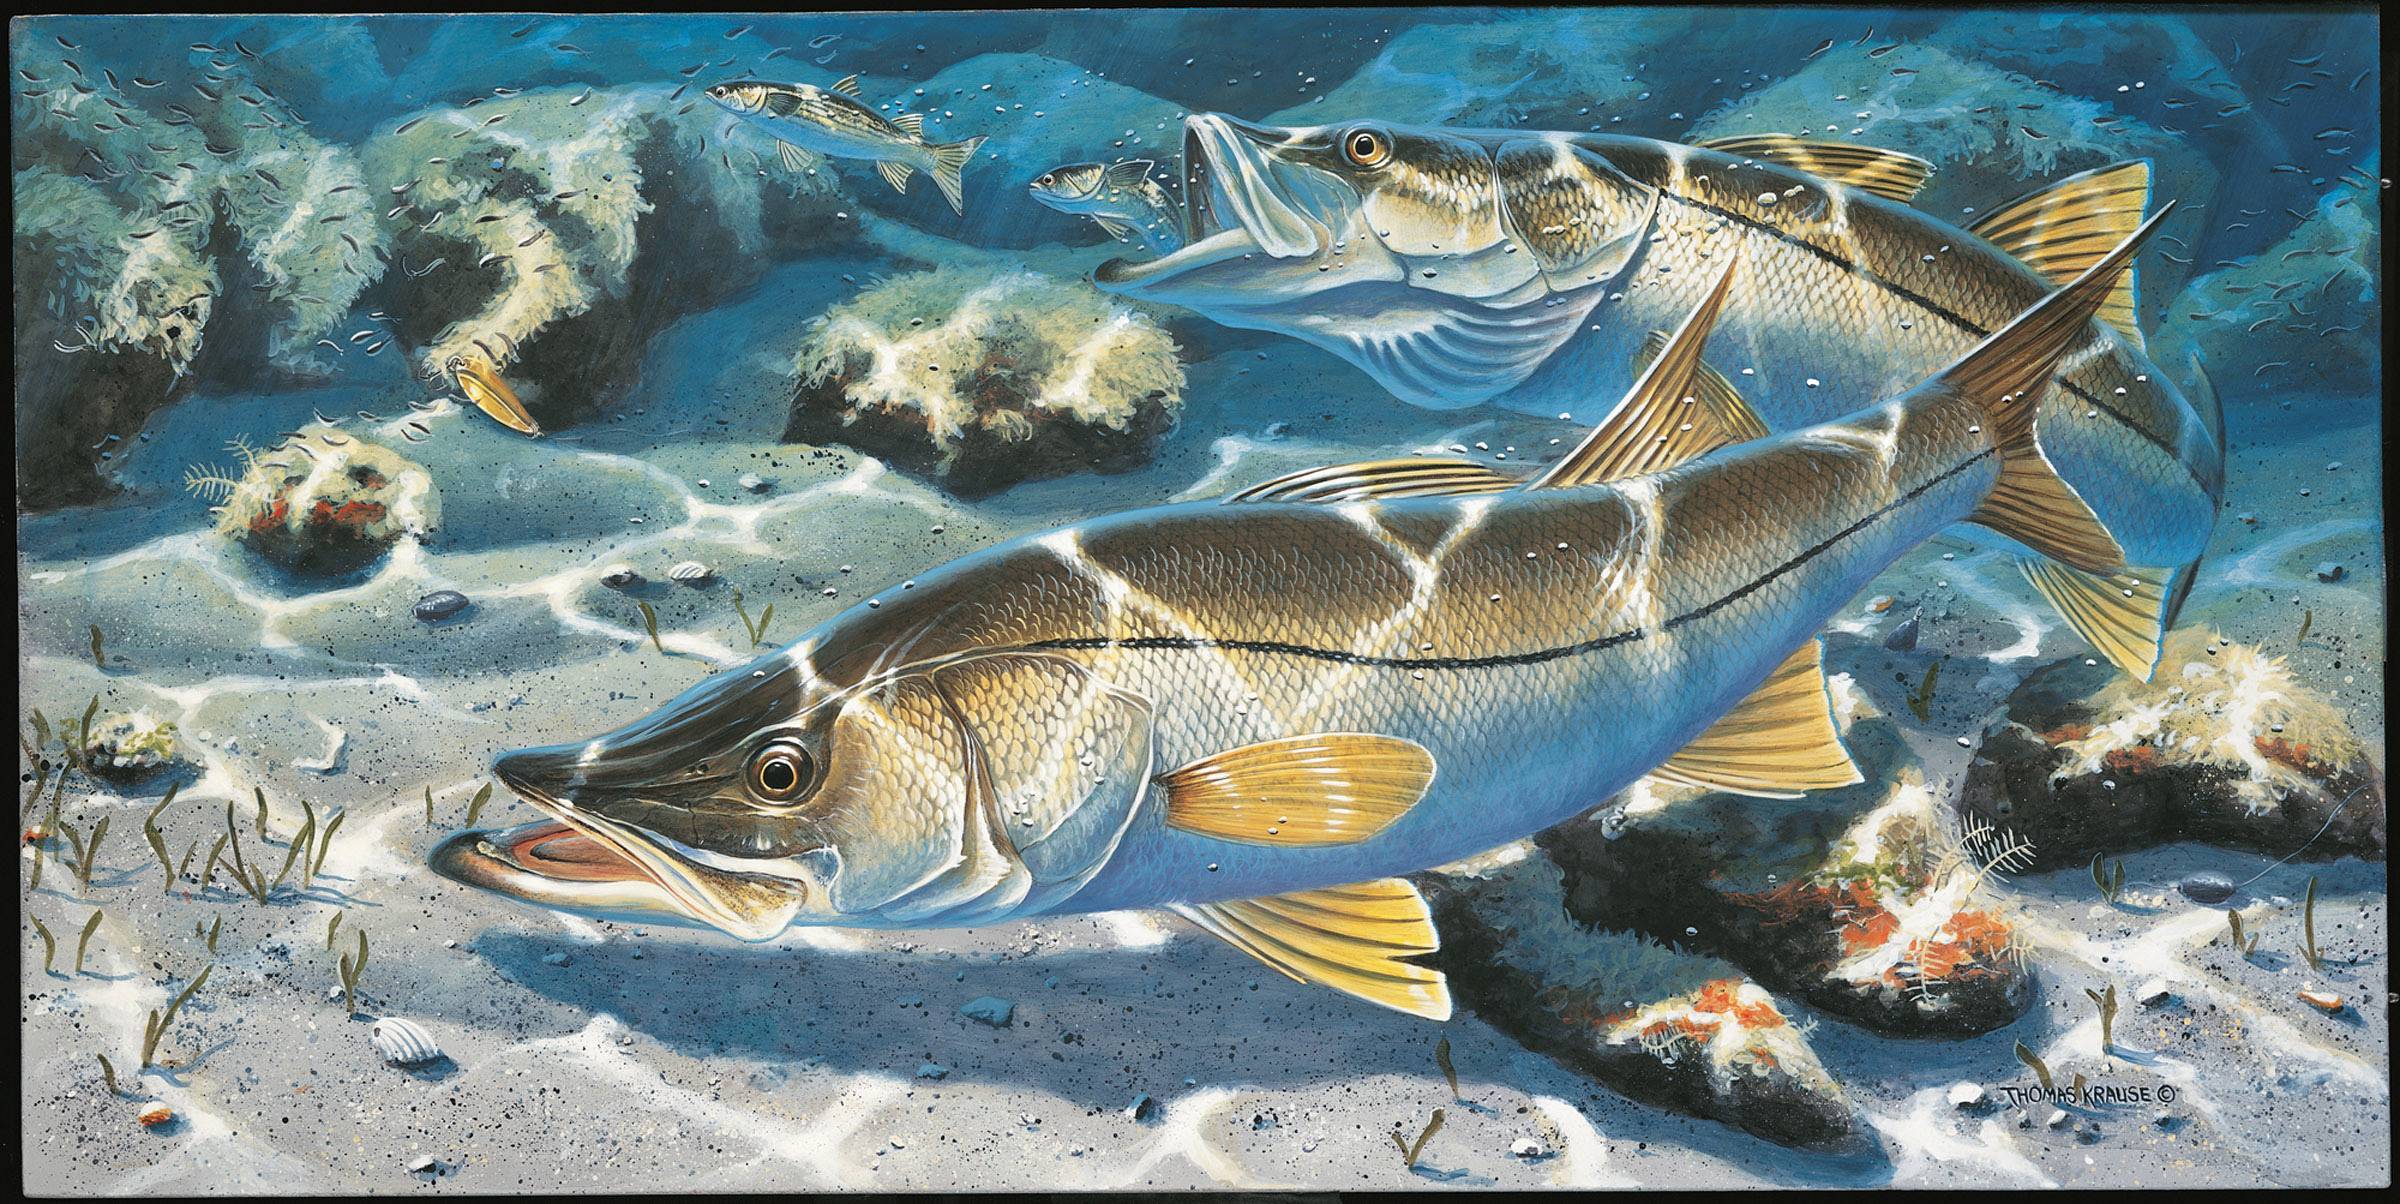 Thomas Krause Limited Edition Fish Prints